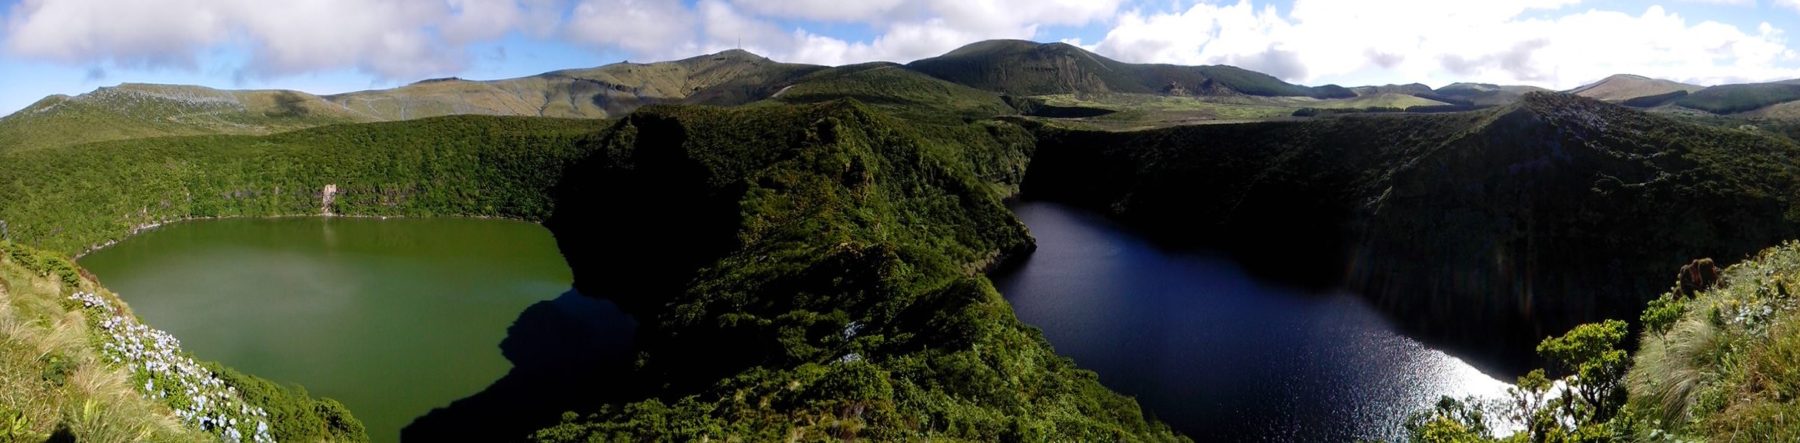 Lagoa Negra & Lagoa Comprida - Flores - Açores